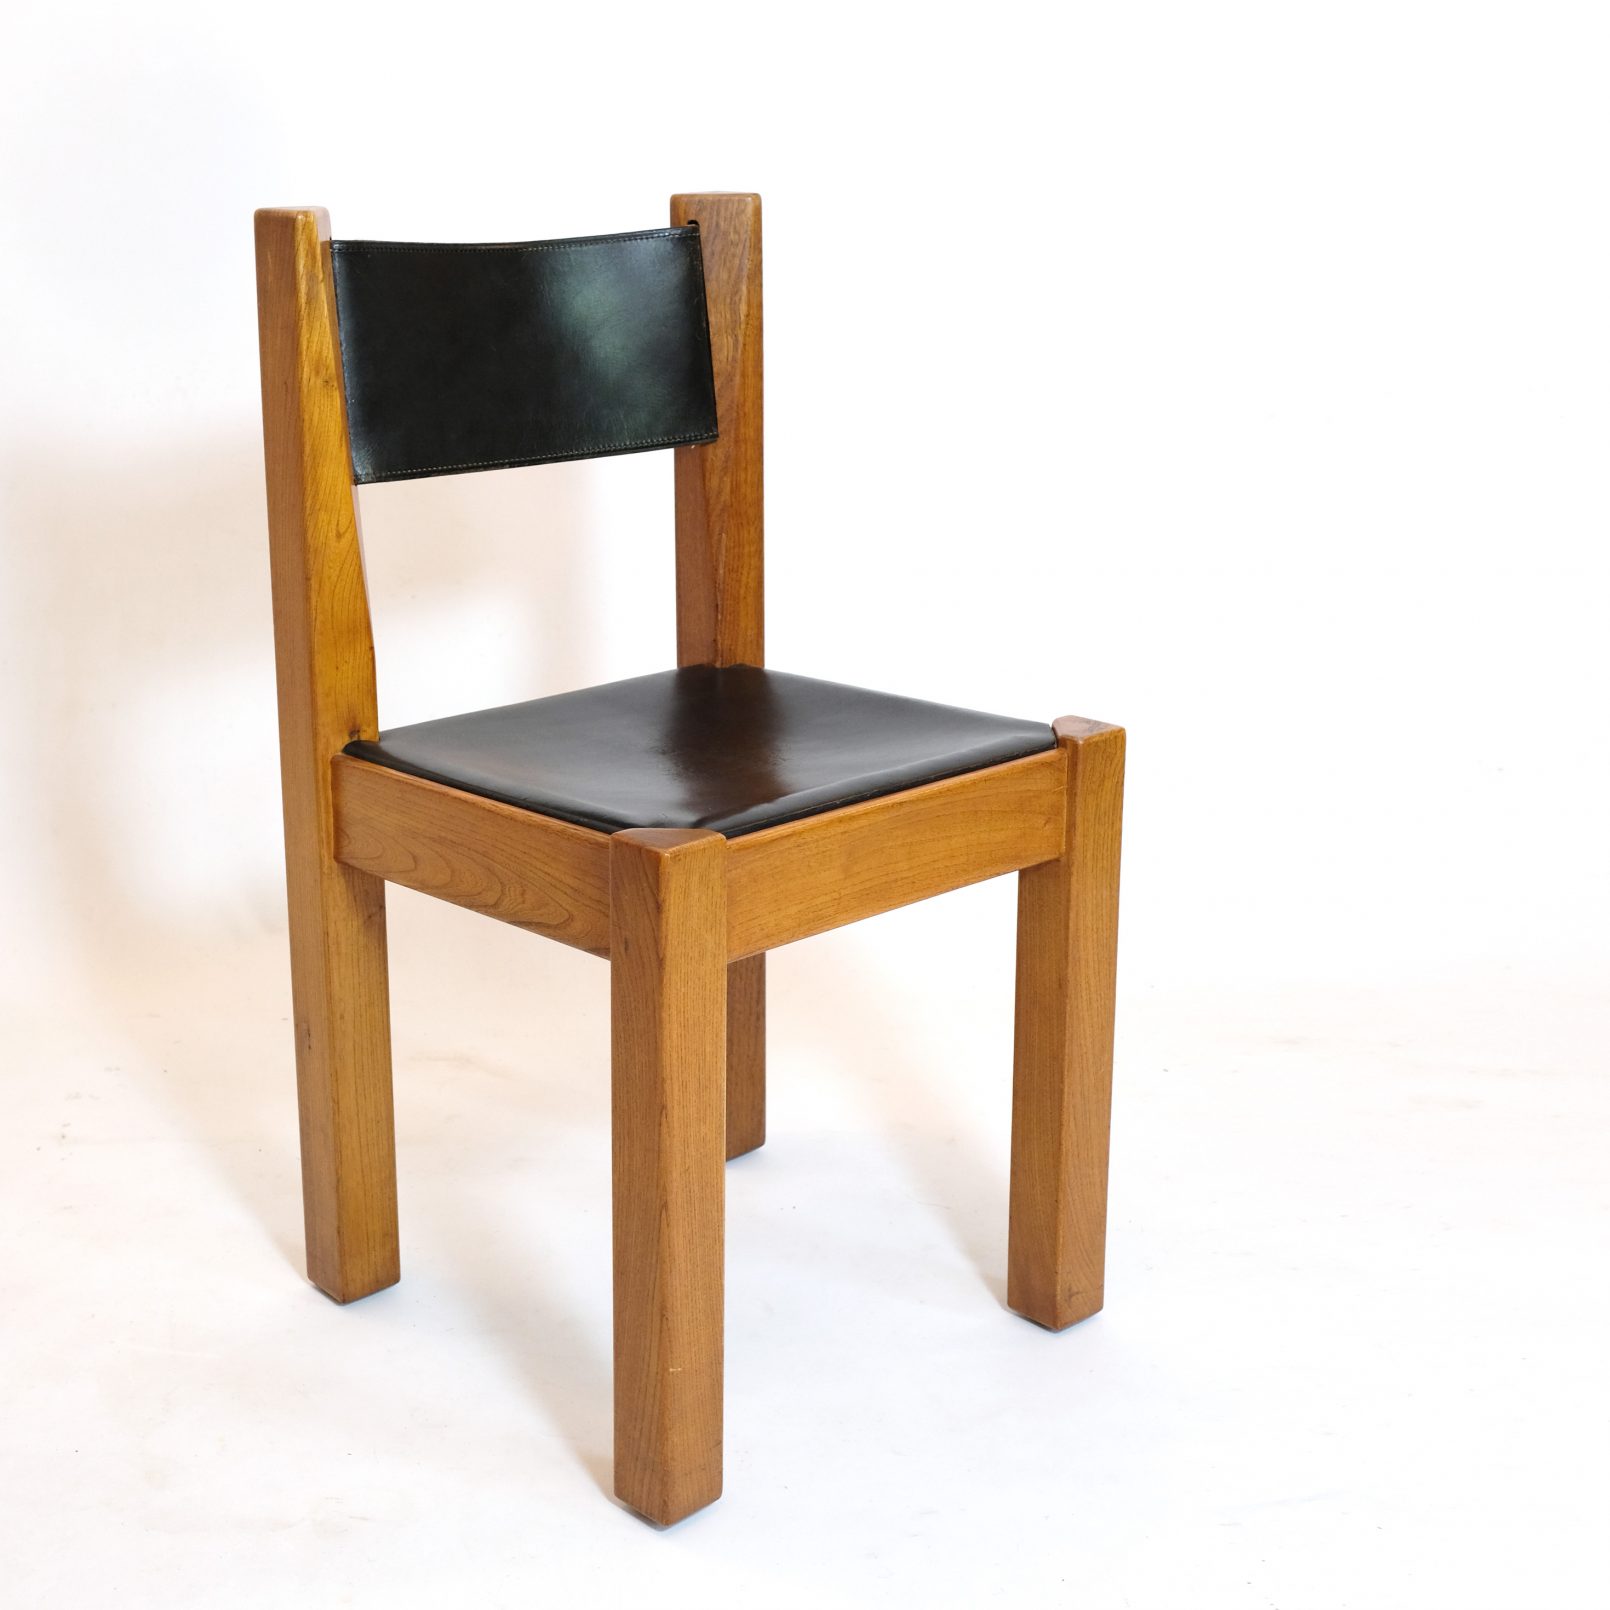 De l’Orme Editeur, solid elm and leather chair, 1970s.